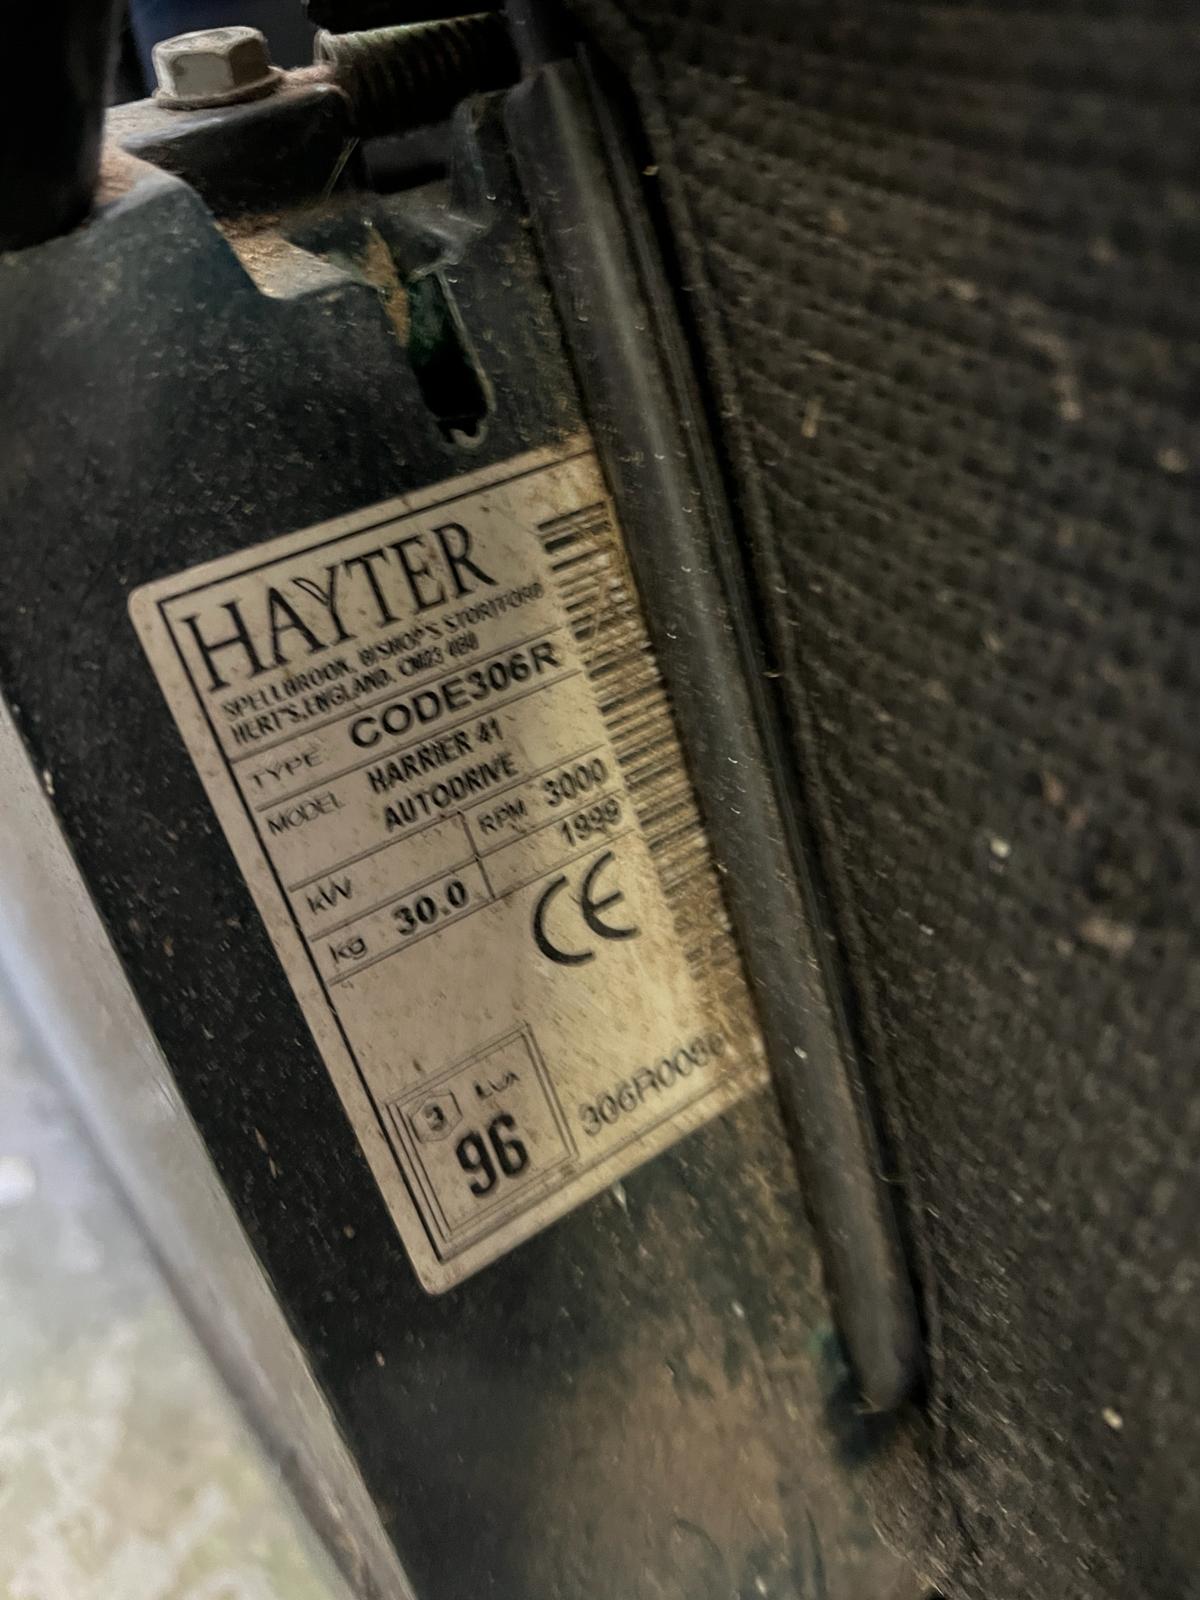 Hayter lawn mower code 306R - Image 4 of 4